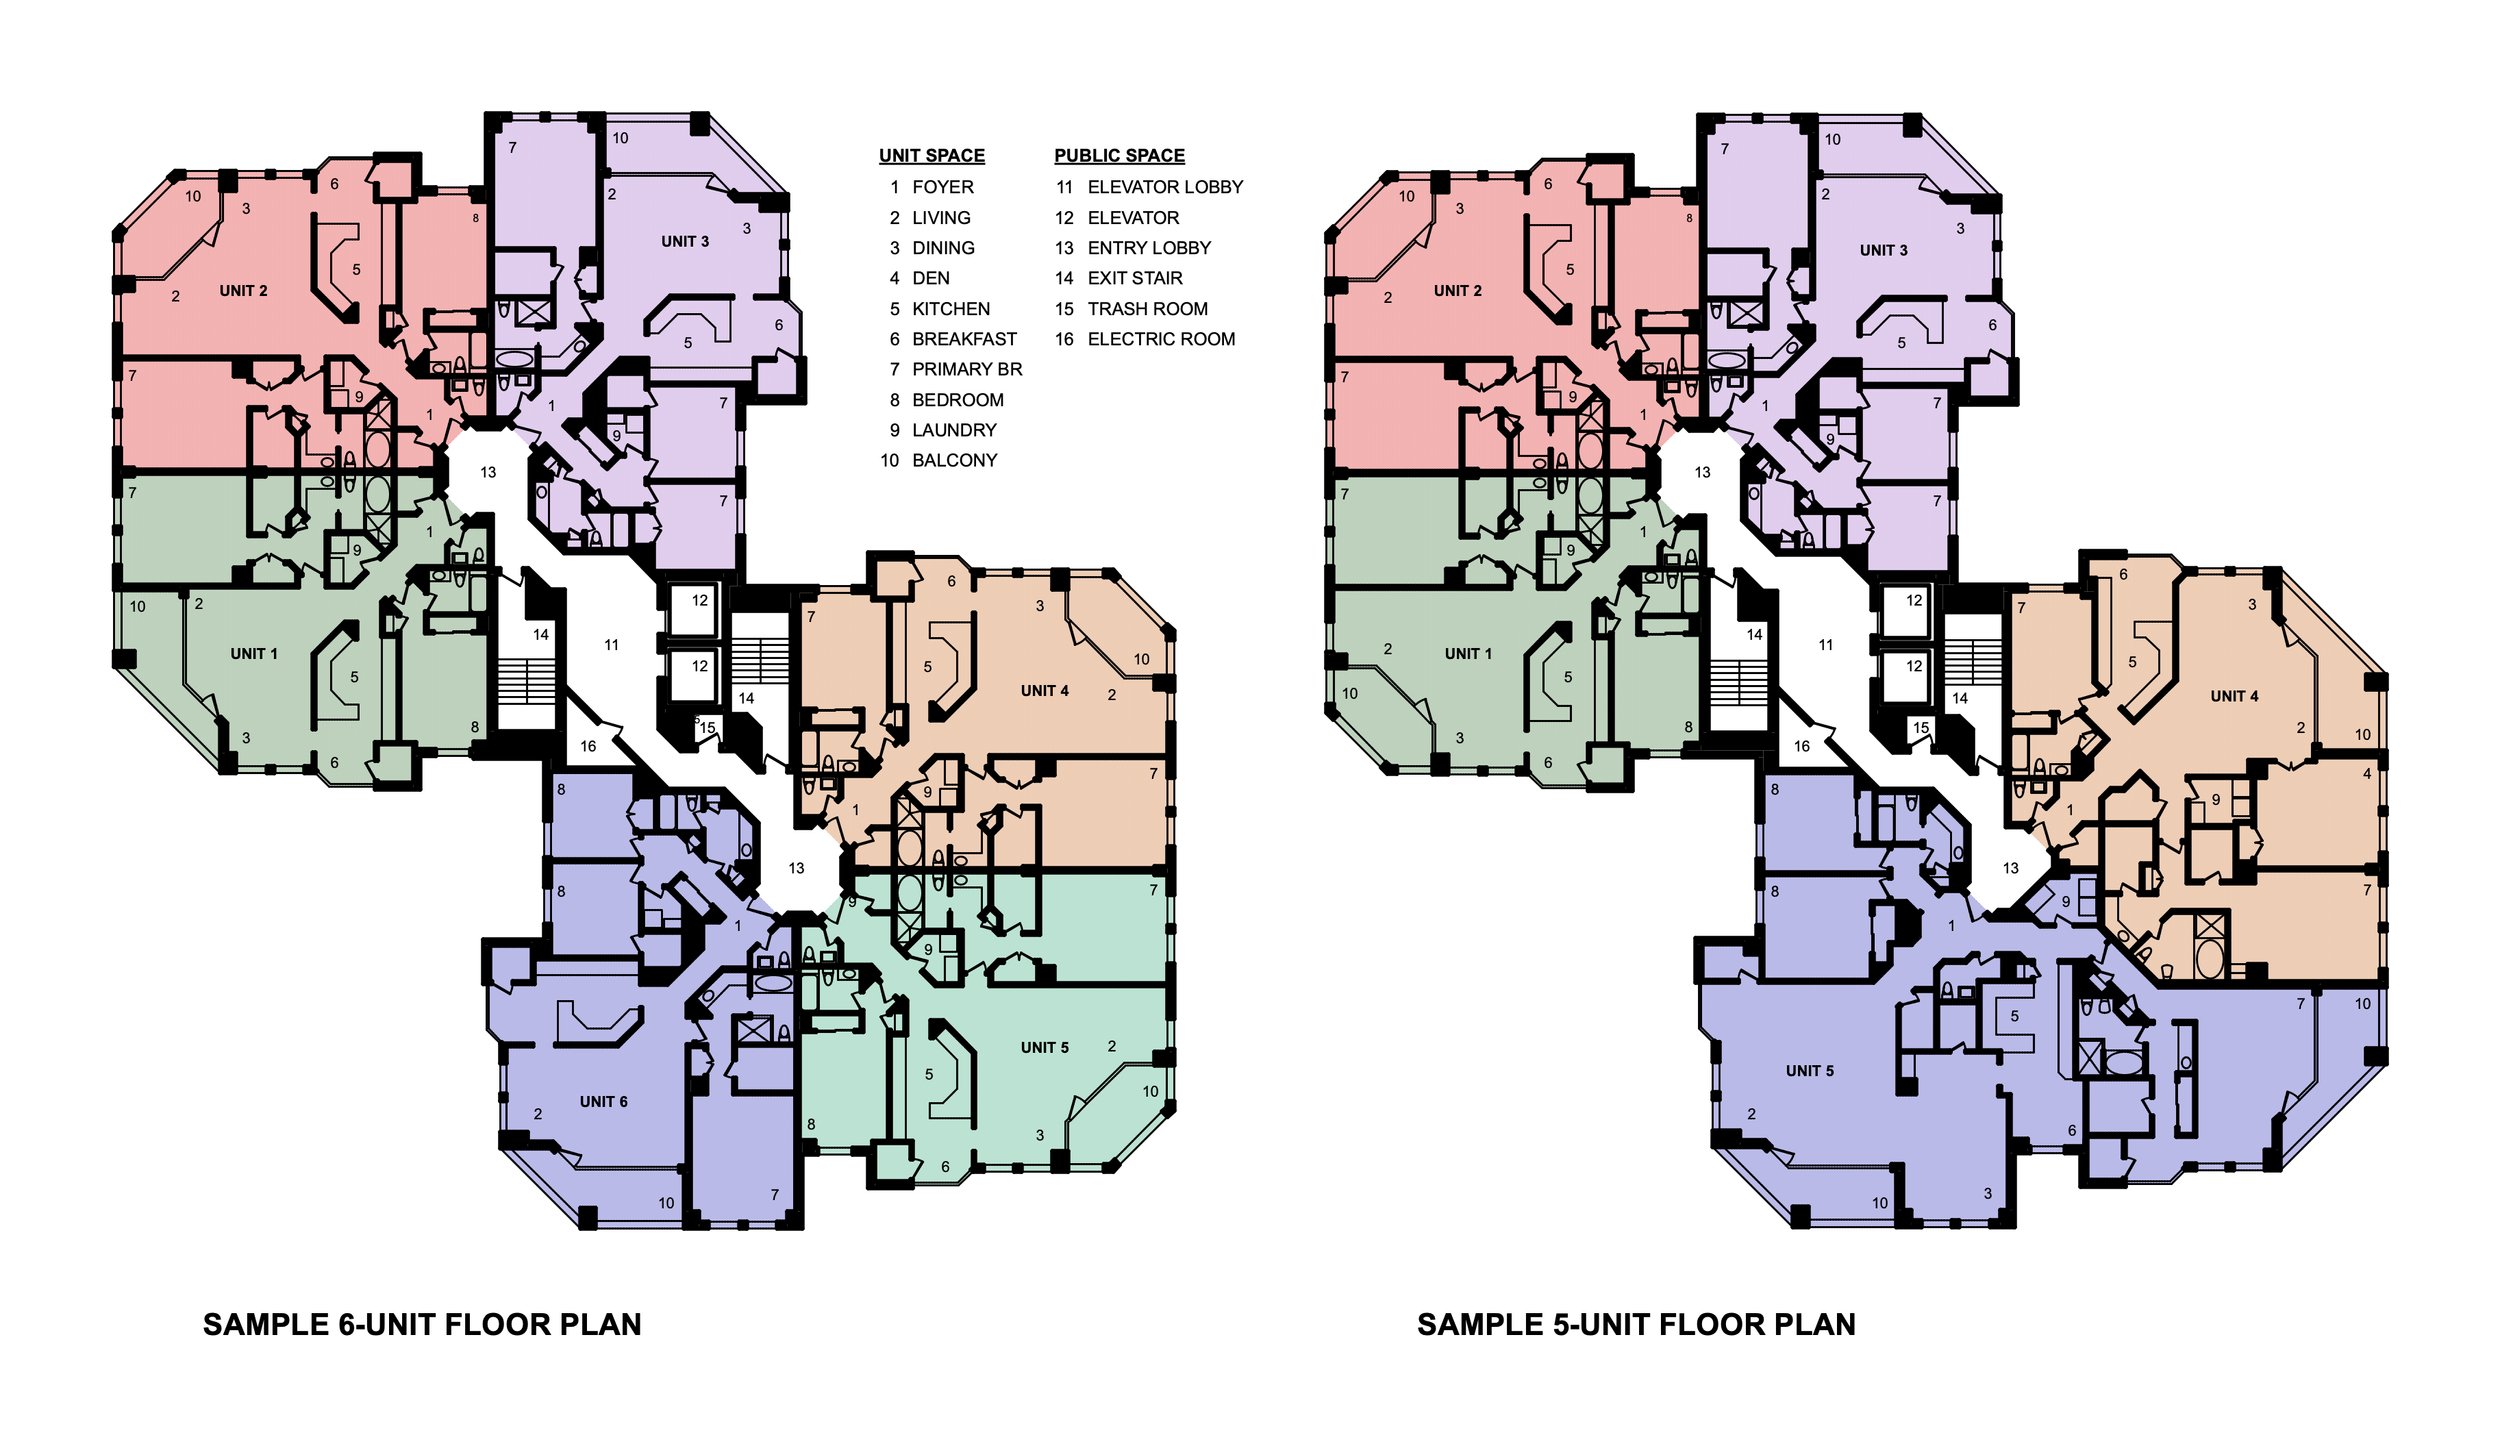 St. James Condominium: Sample Floor Plans